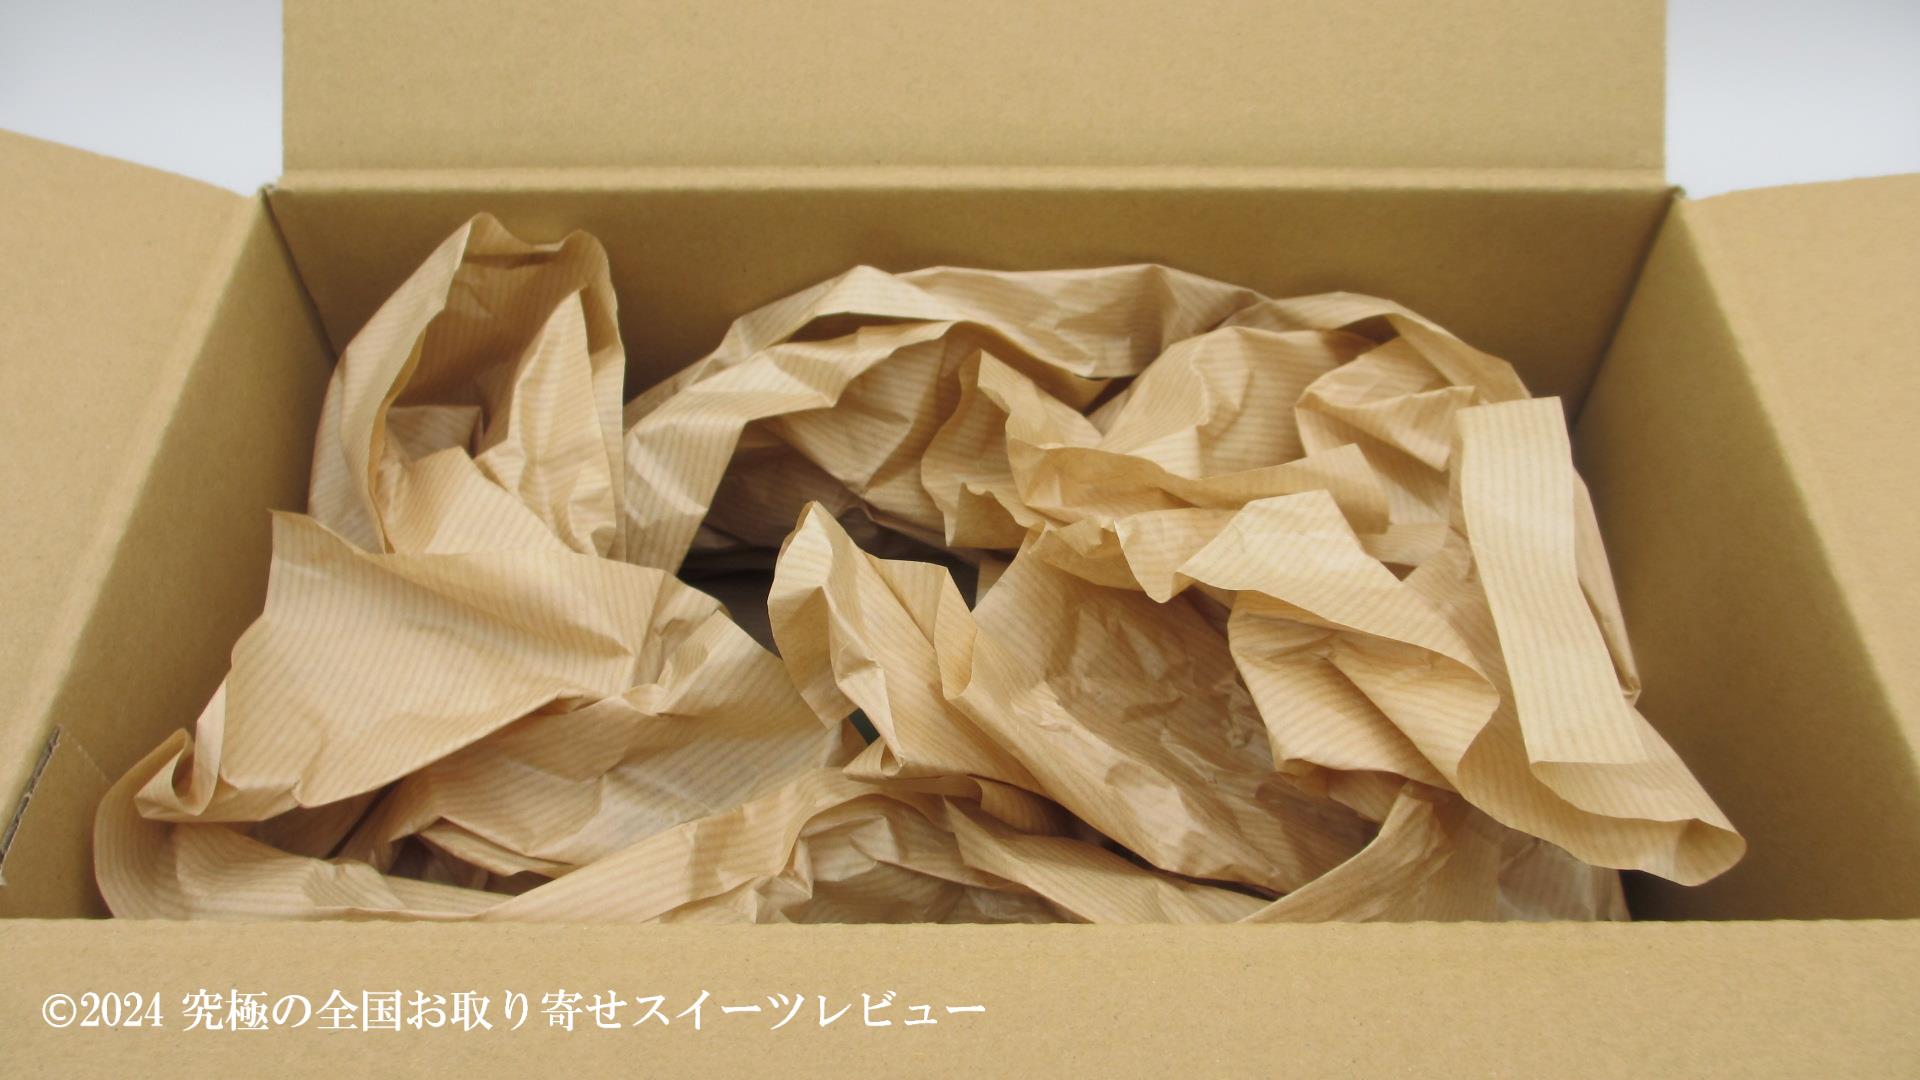 抹茶テリーヌプレミアム(祇園辻利)の配送用の箱の中4の画像